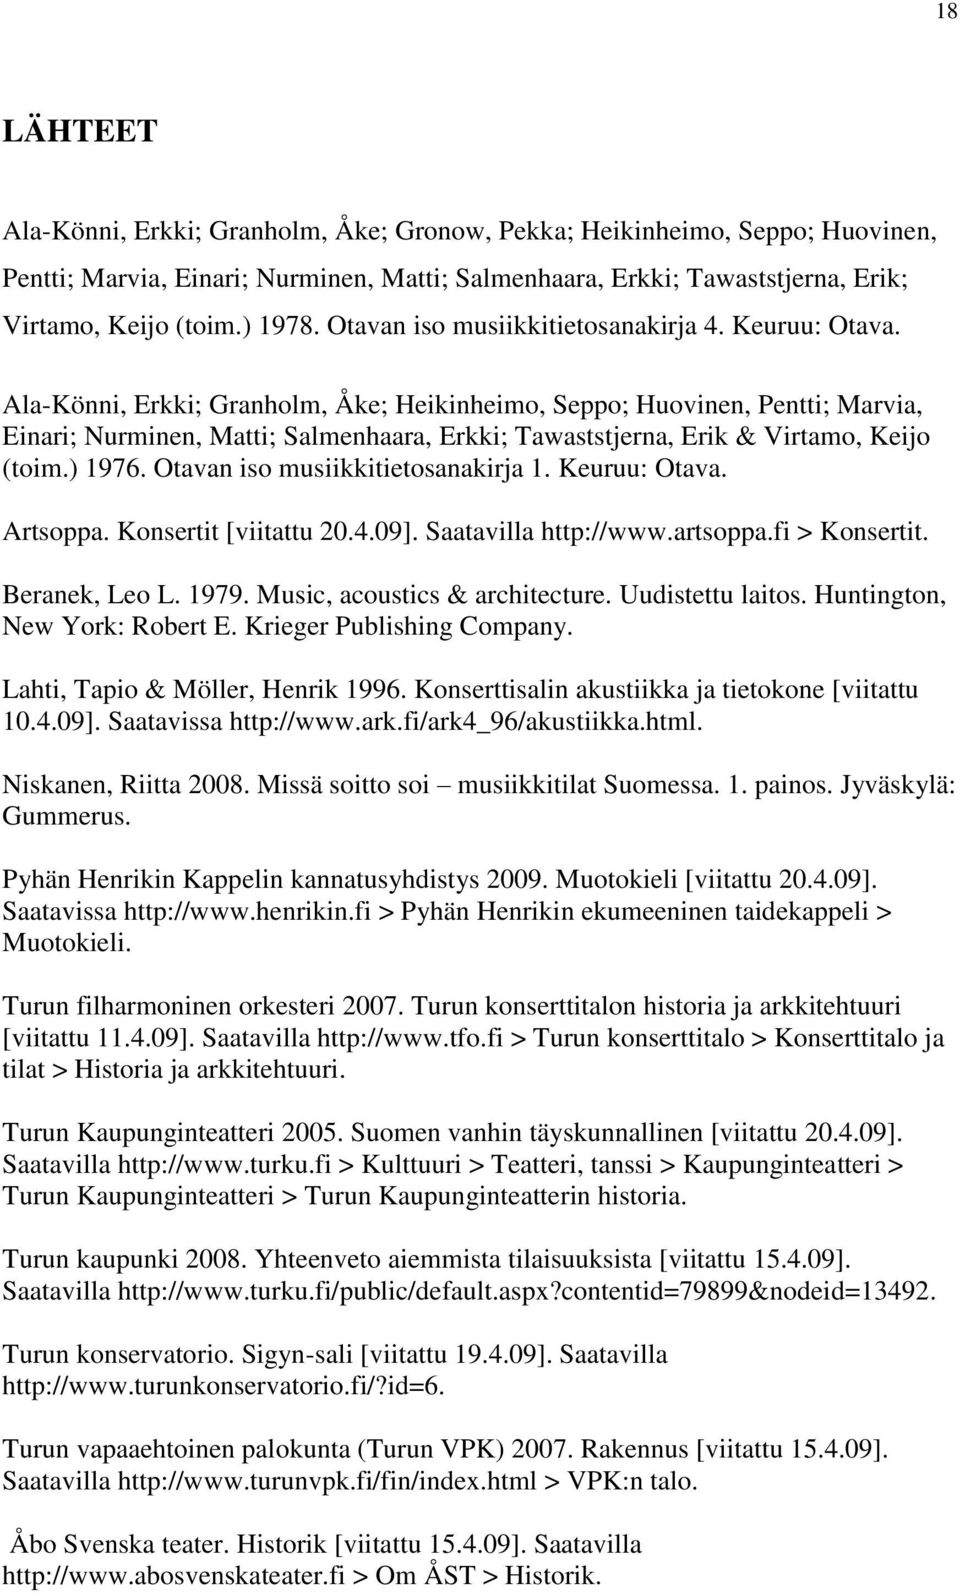 Ala-Könni, Erkki; Granholm, Åke; Heikinheimo, Seppo; Huovinen, Pentti; Marvia, Einari; Nurminen, Matti; Salmenhaara, Erkki; Tawaststjerna, Erik & Virtamo, Keijo (toim.) 1976.